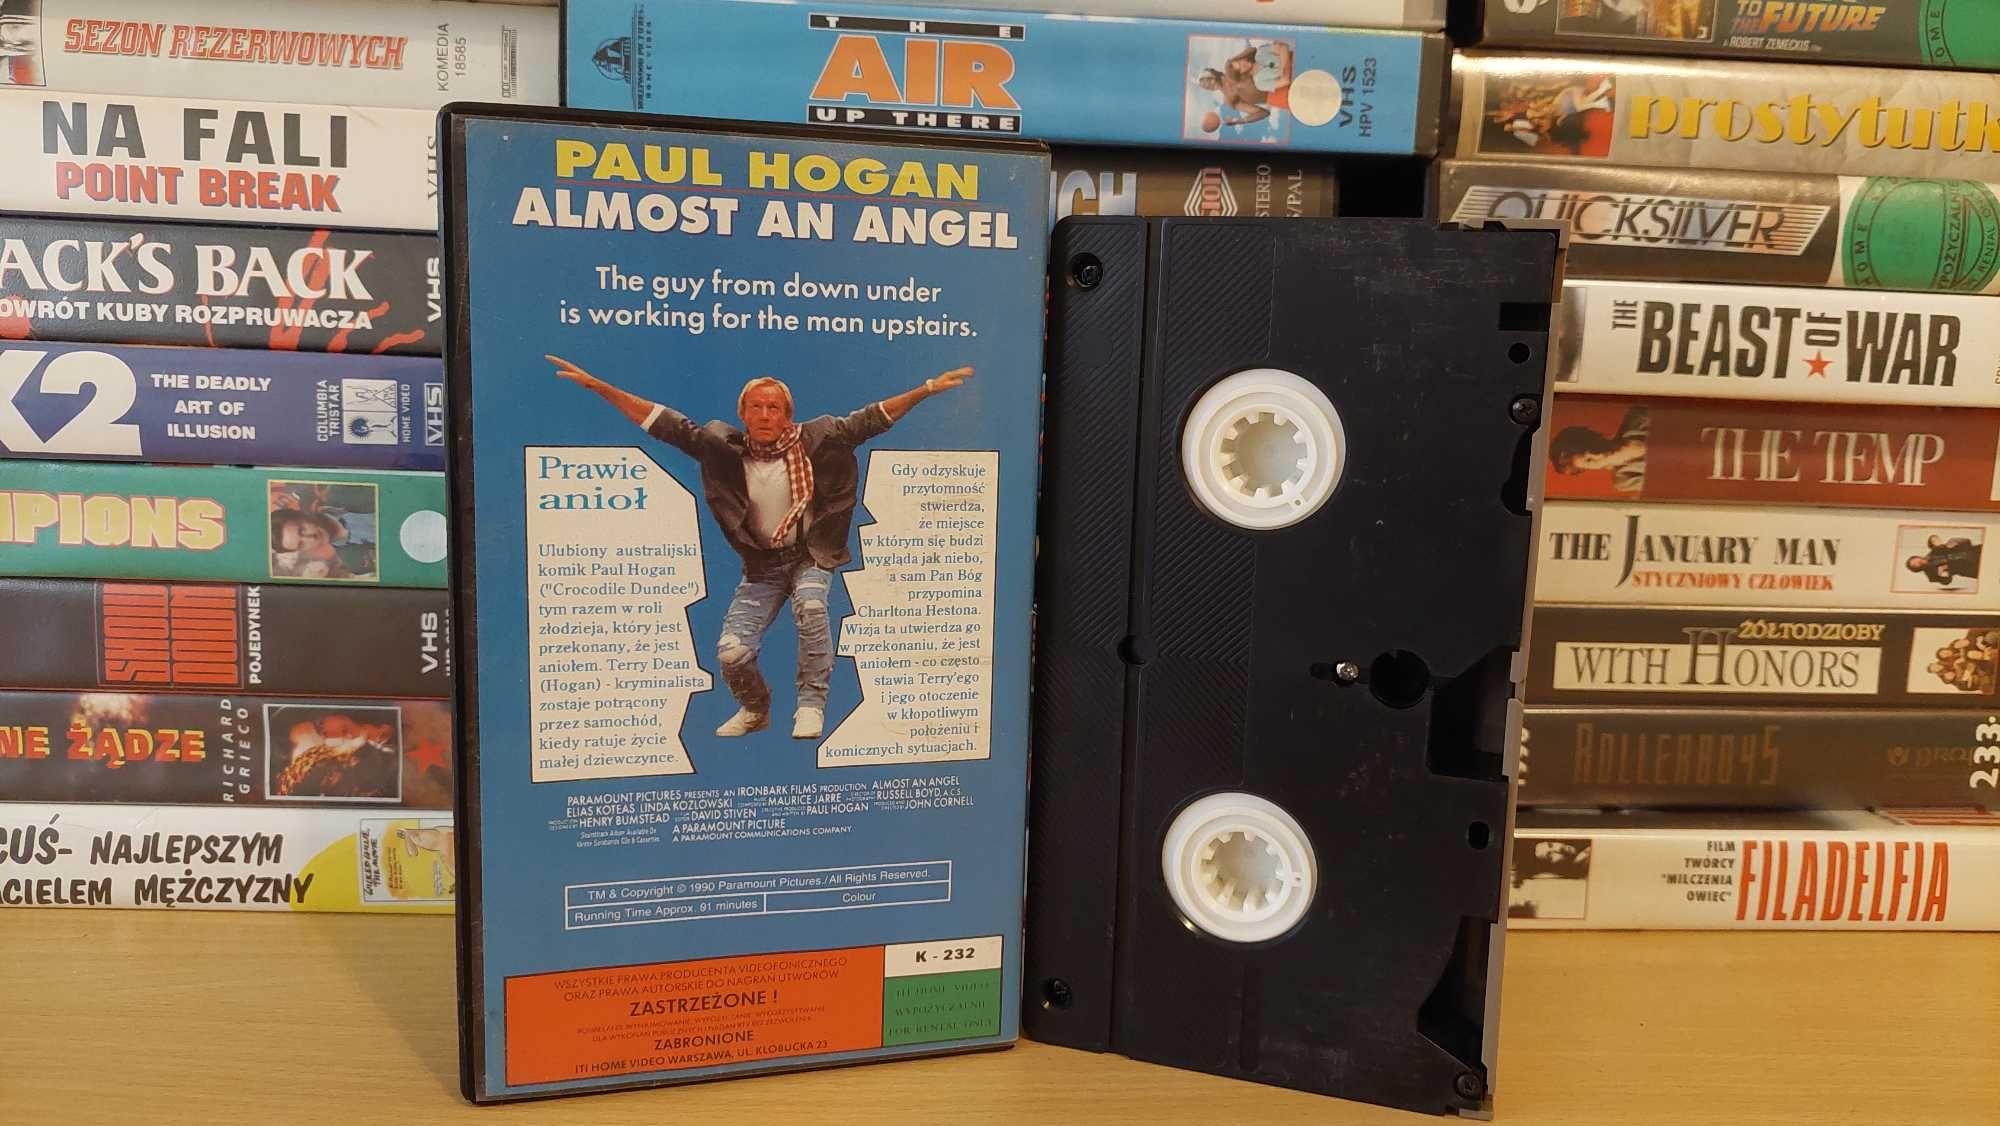 Prawie Jak Anioł - (Almost an Angel) - VHS